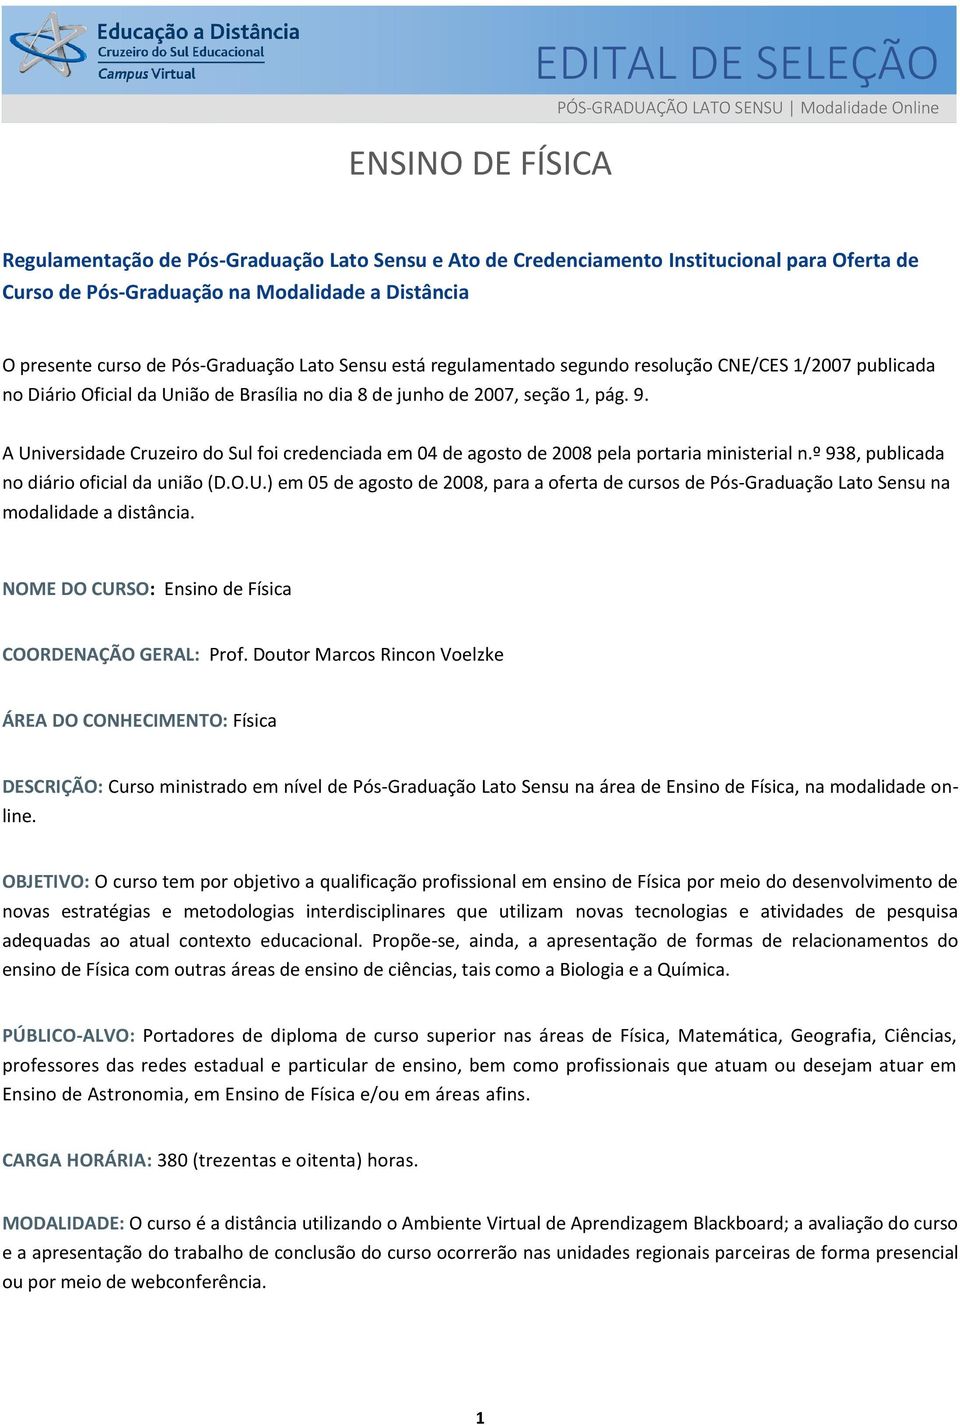 seção 1, pág. 9. A Universidade Cruzeiro do Sul foi credenciada em 04 de agosto de 2008 pela portaria ministerial n.º 938, publicada no diário oficial da união (D.O.U.) em 05 de agosto de 2008, para a oferta de cursos de Pós-Graduação Lato Sensu na modalidade a distância.